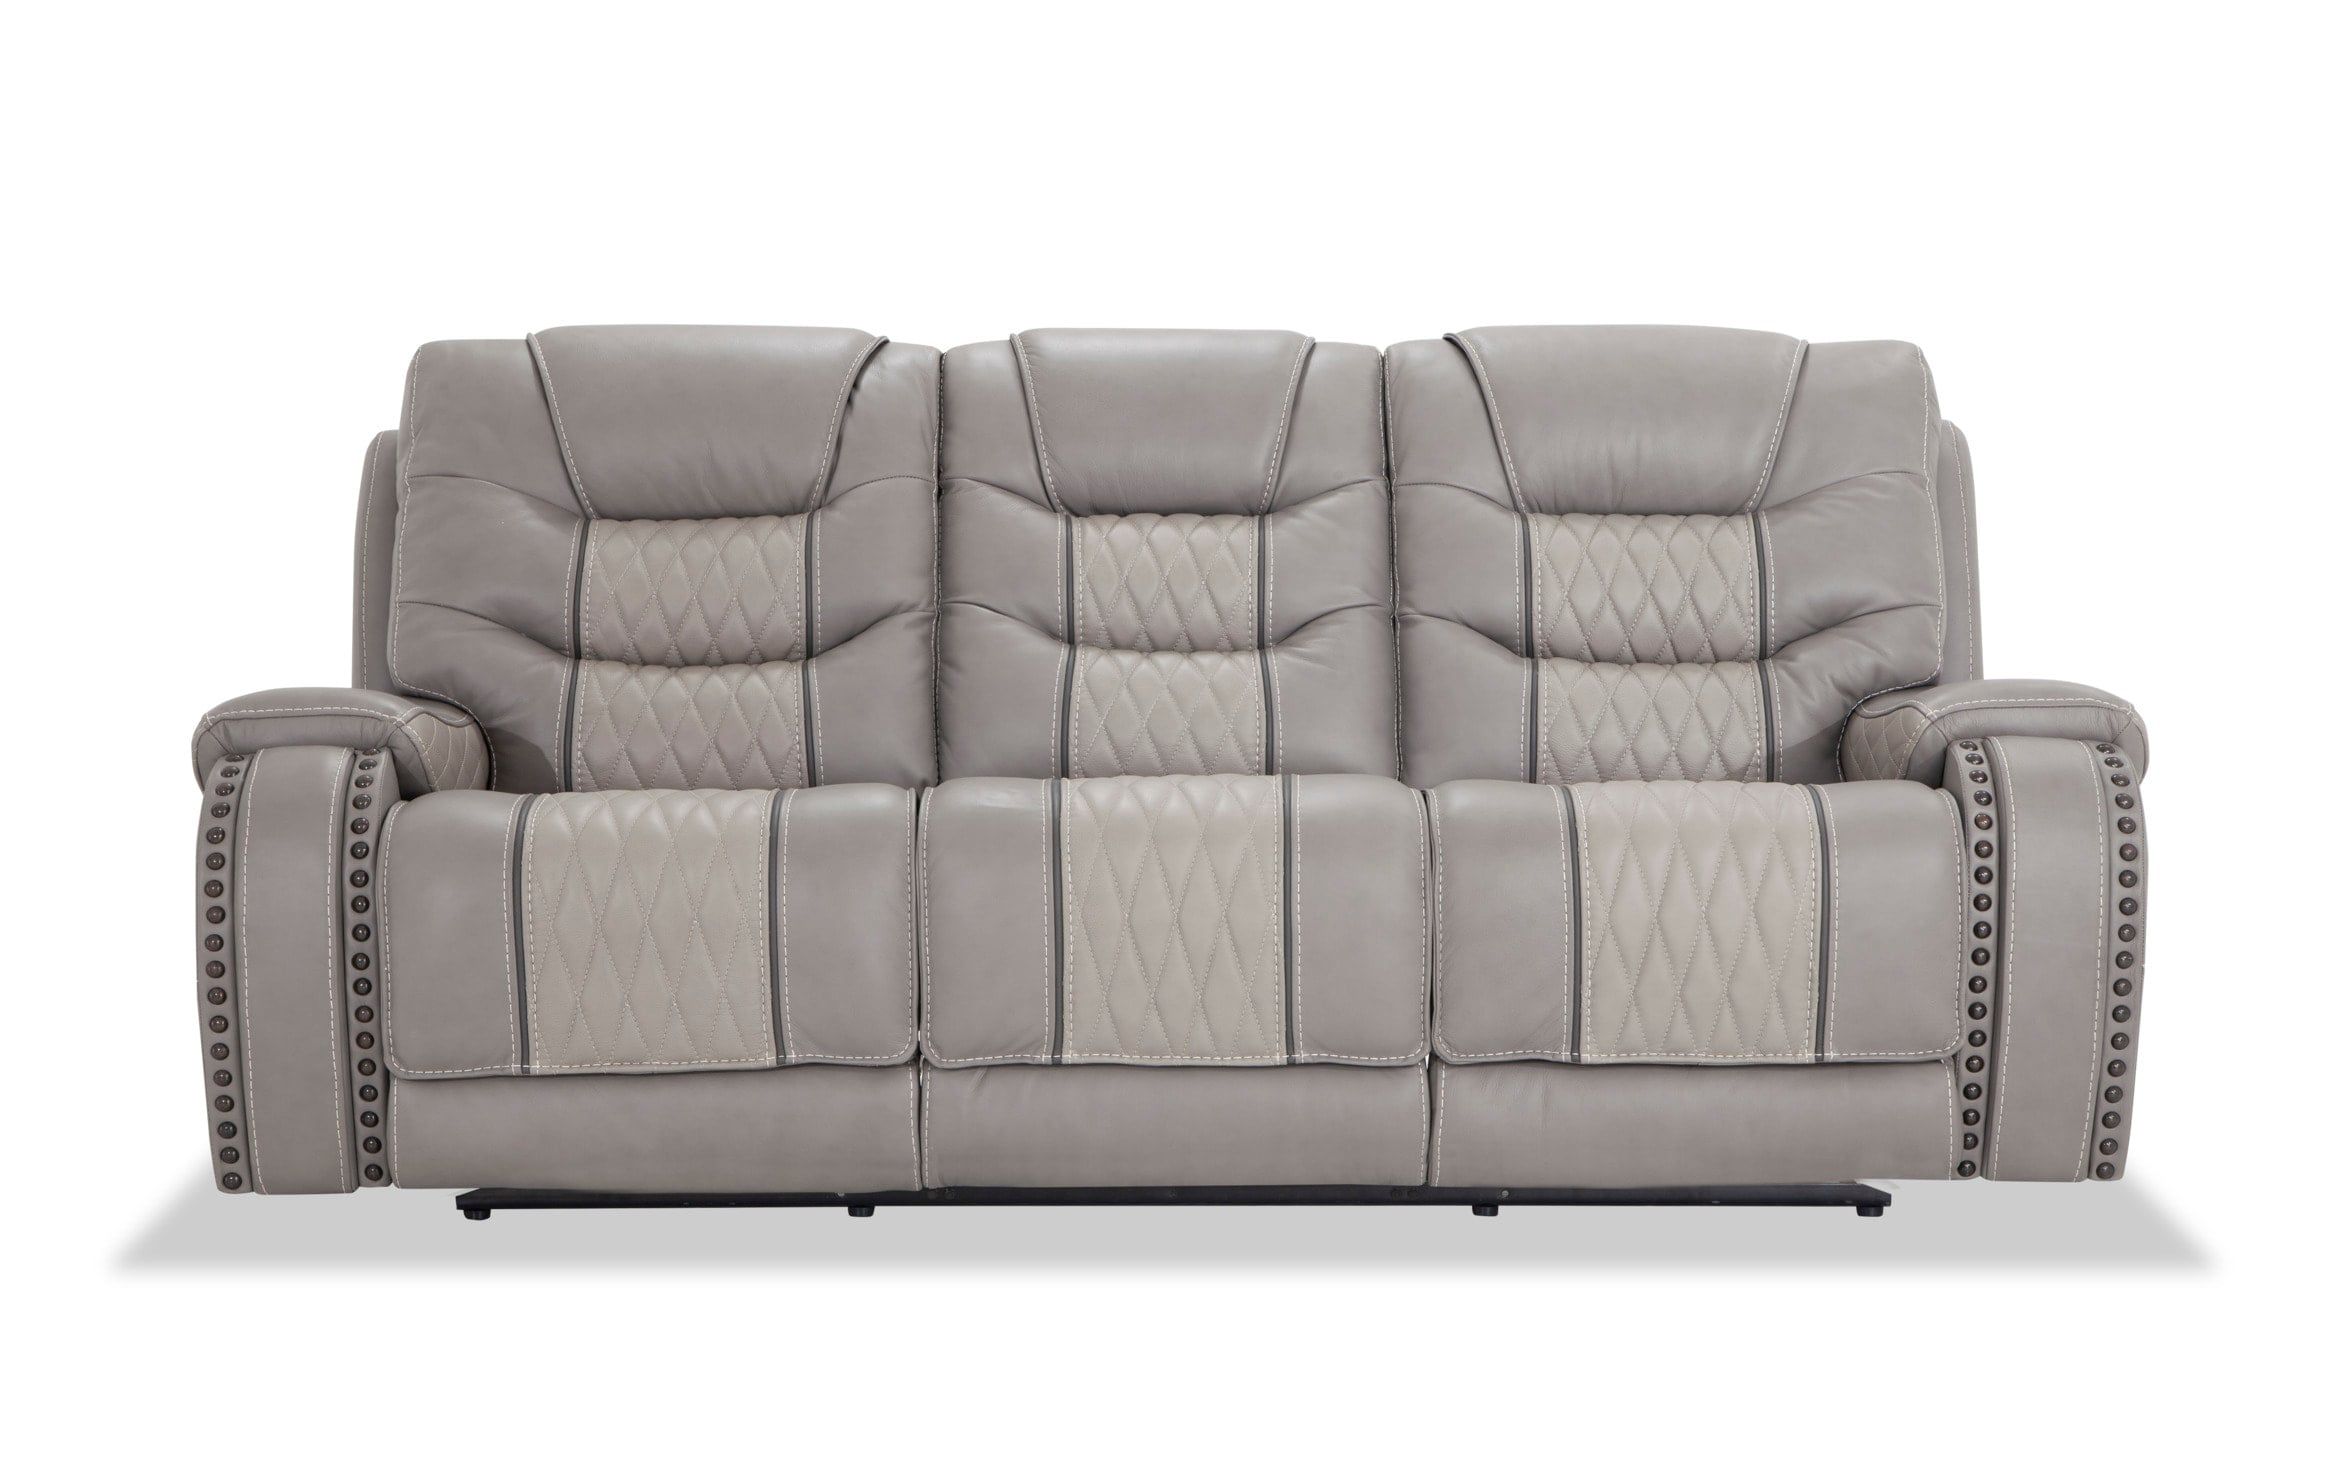 Bobs Furniture Leather Sofa : Trailblazer Gray Leather Inside Trailblazer Gray Leather Power Reclining Sofas (View 3 of 15)